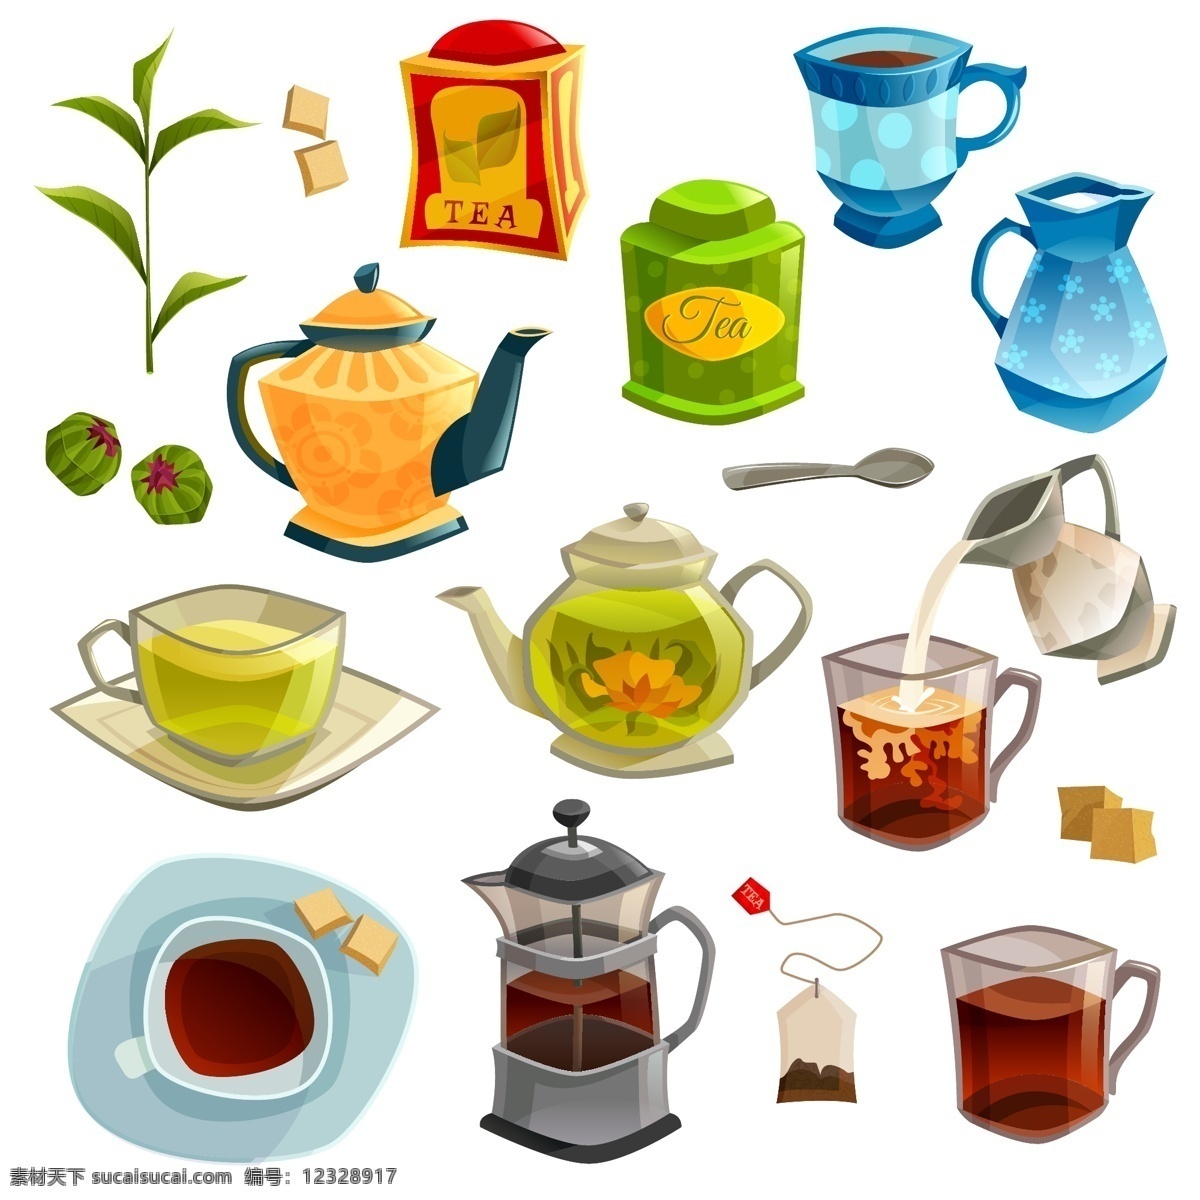 时尚 下午 杯 元素 插画 茶叶 茶壶 杯子 红茶 花茶 咖啡 茶叶包 下午茶